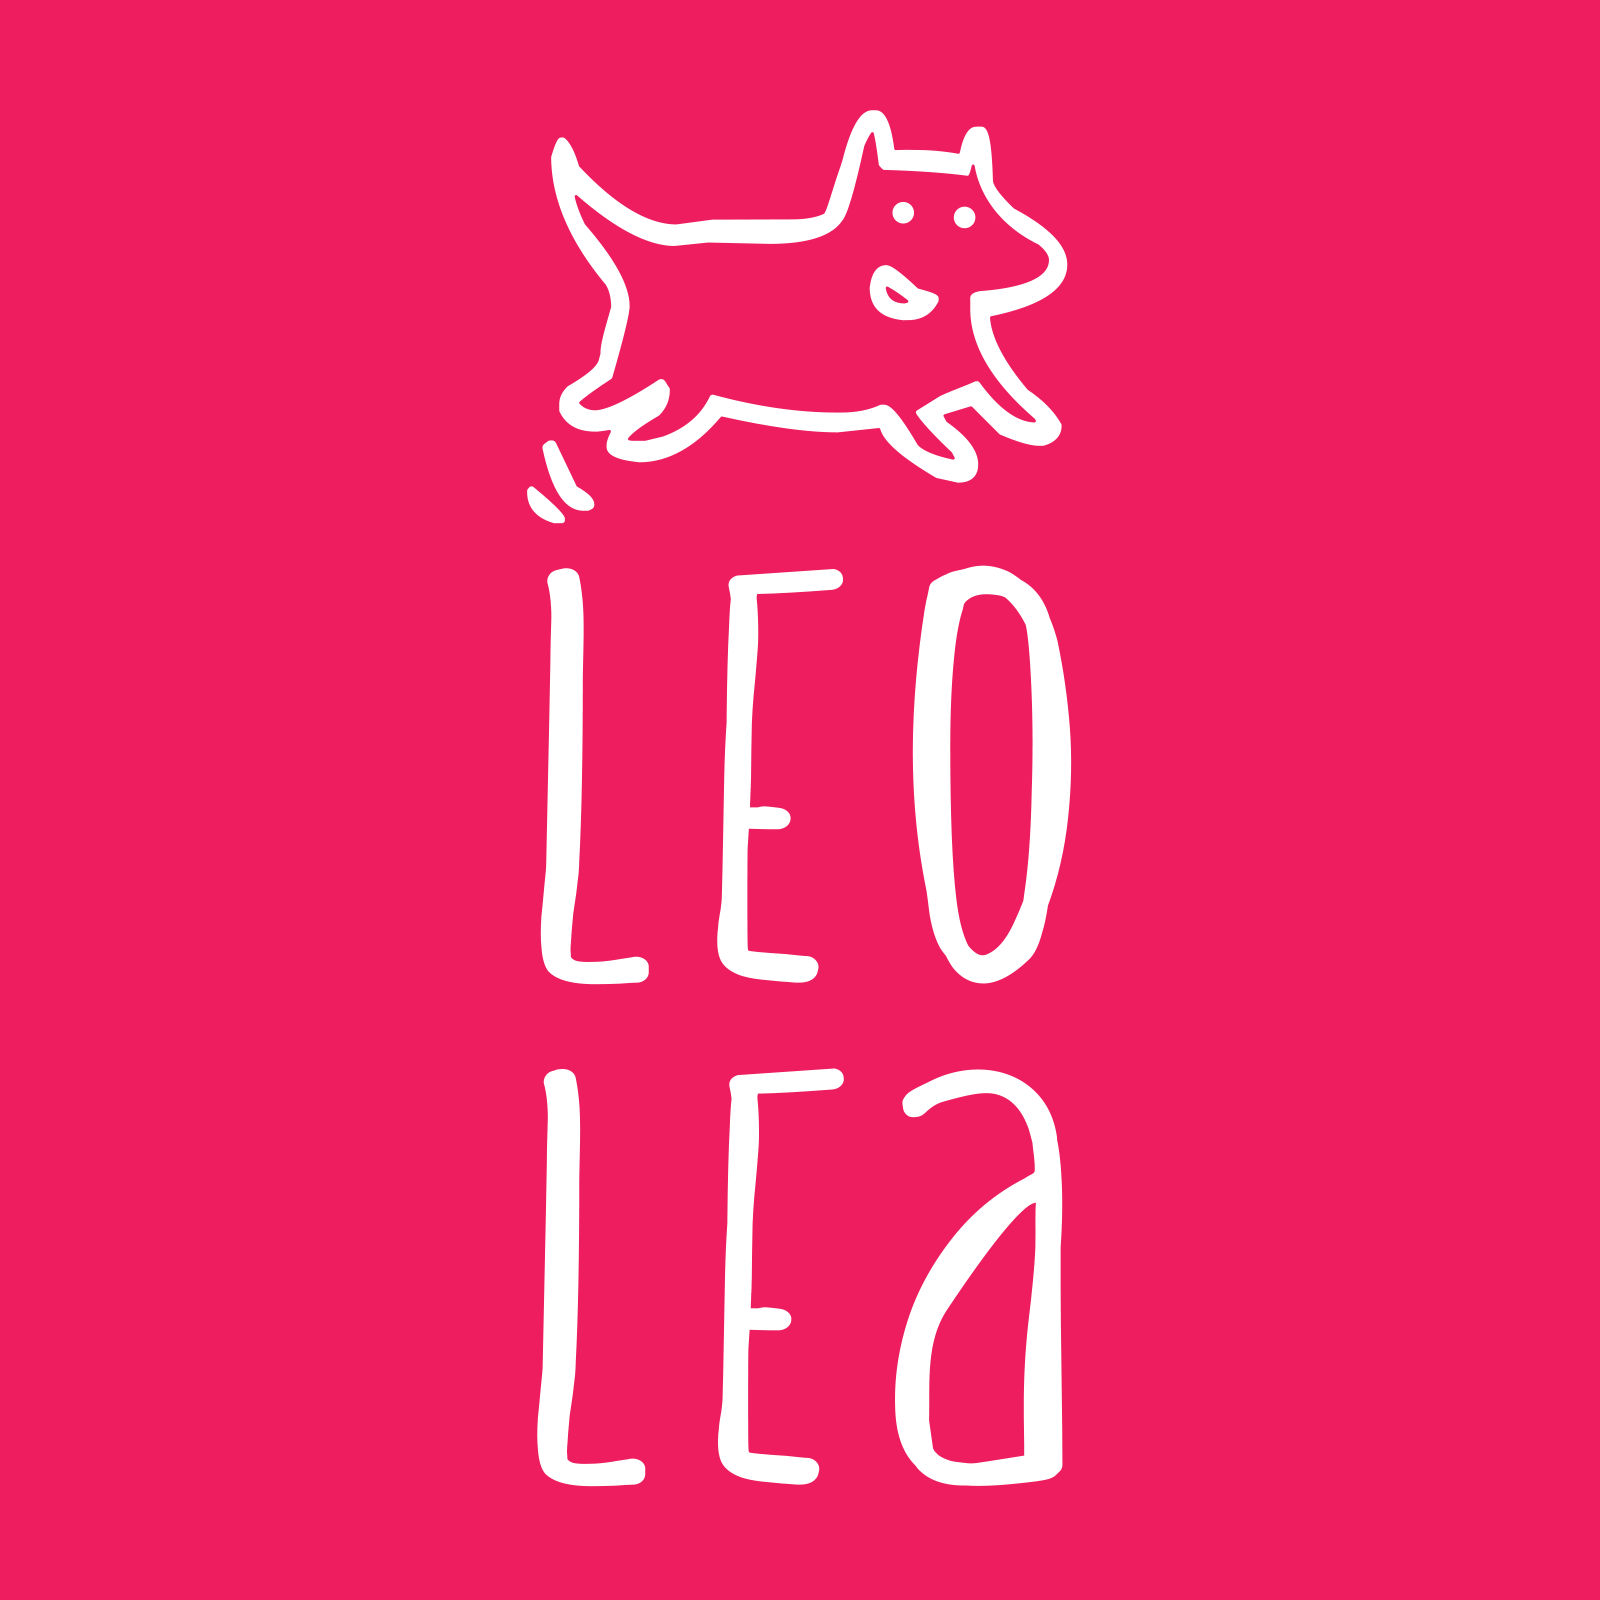 Leo et Lea